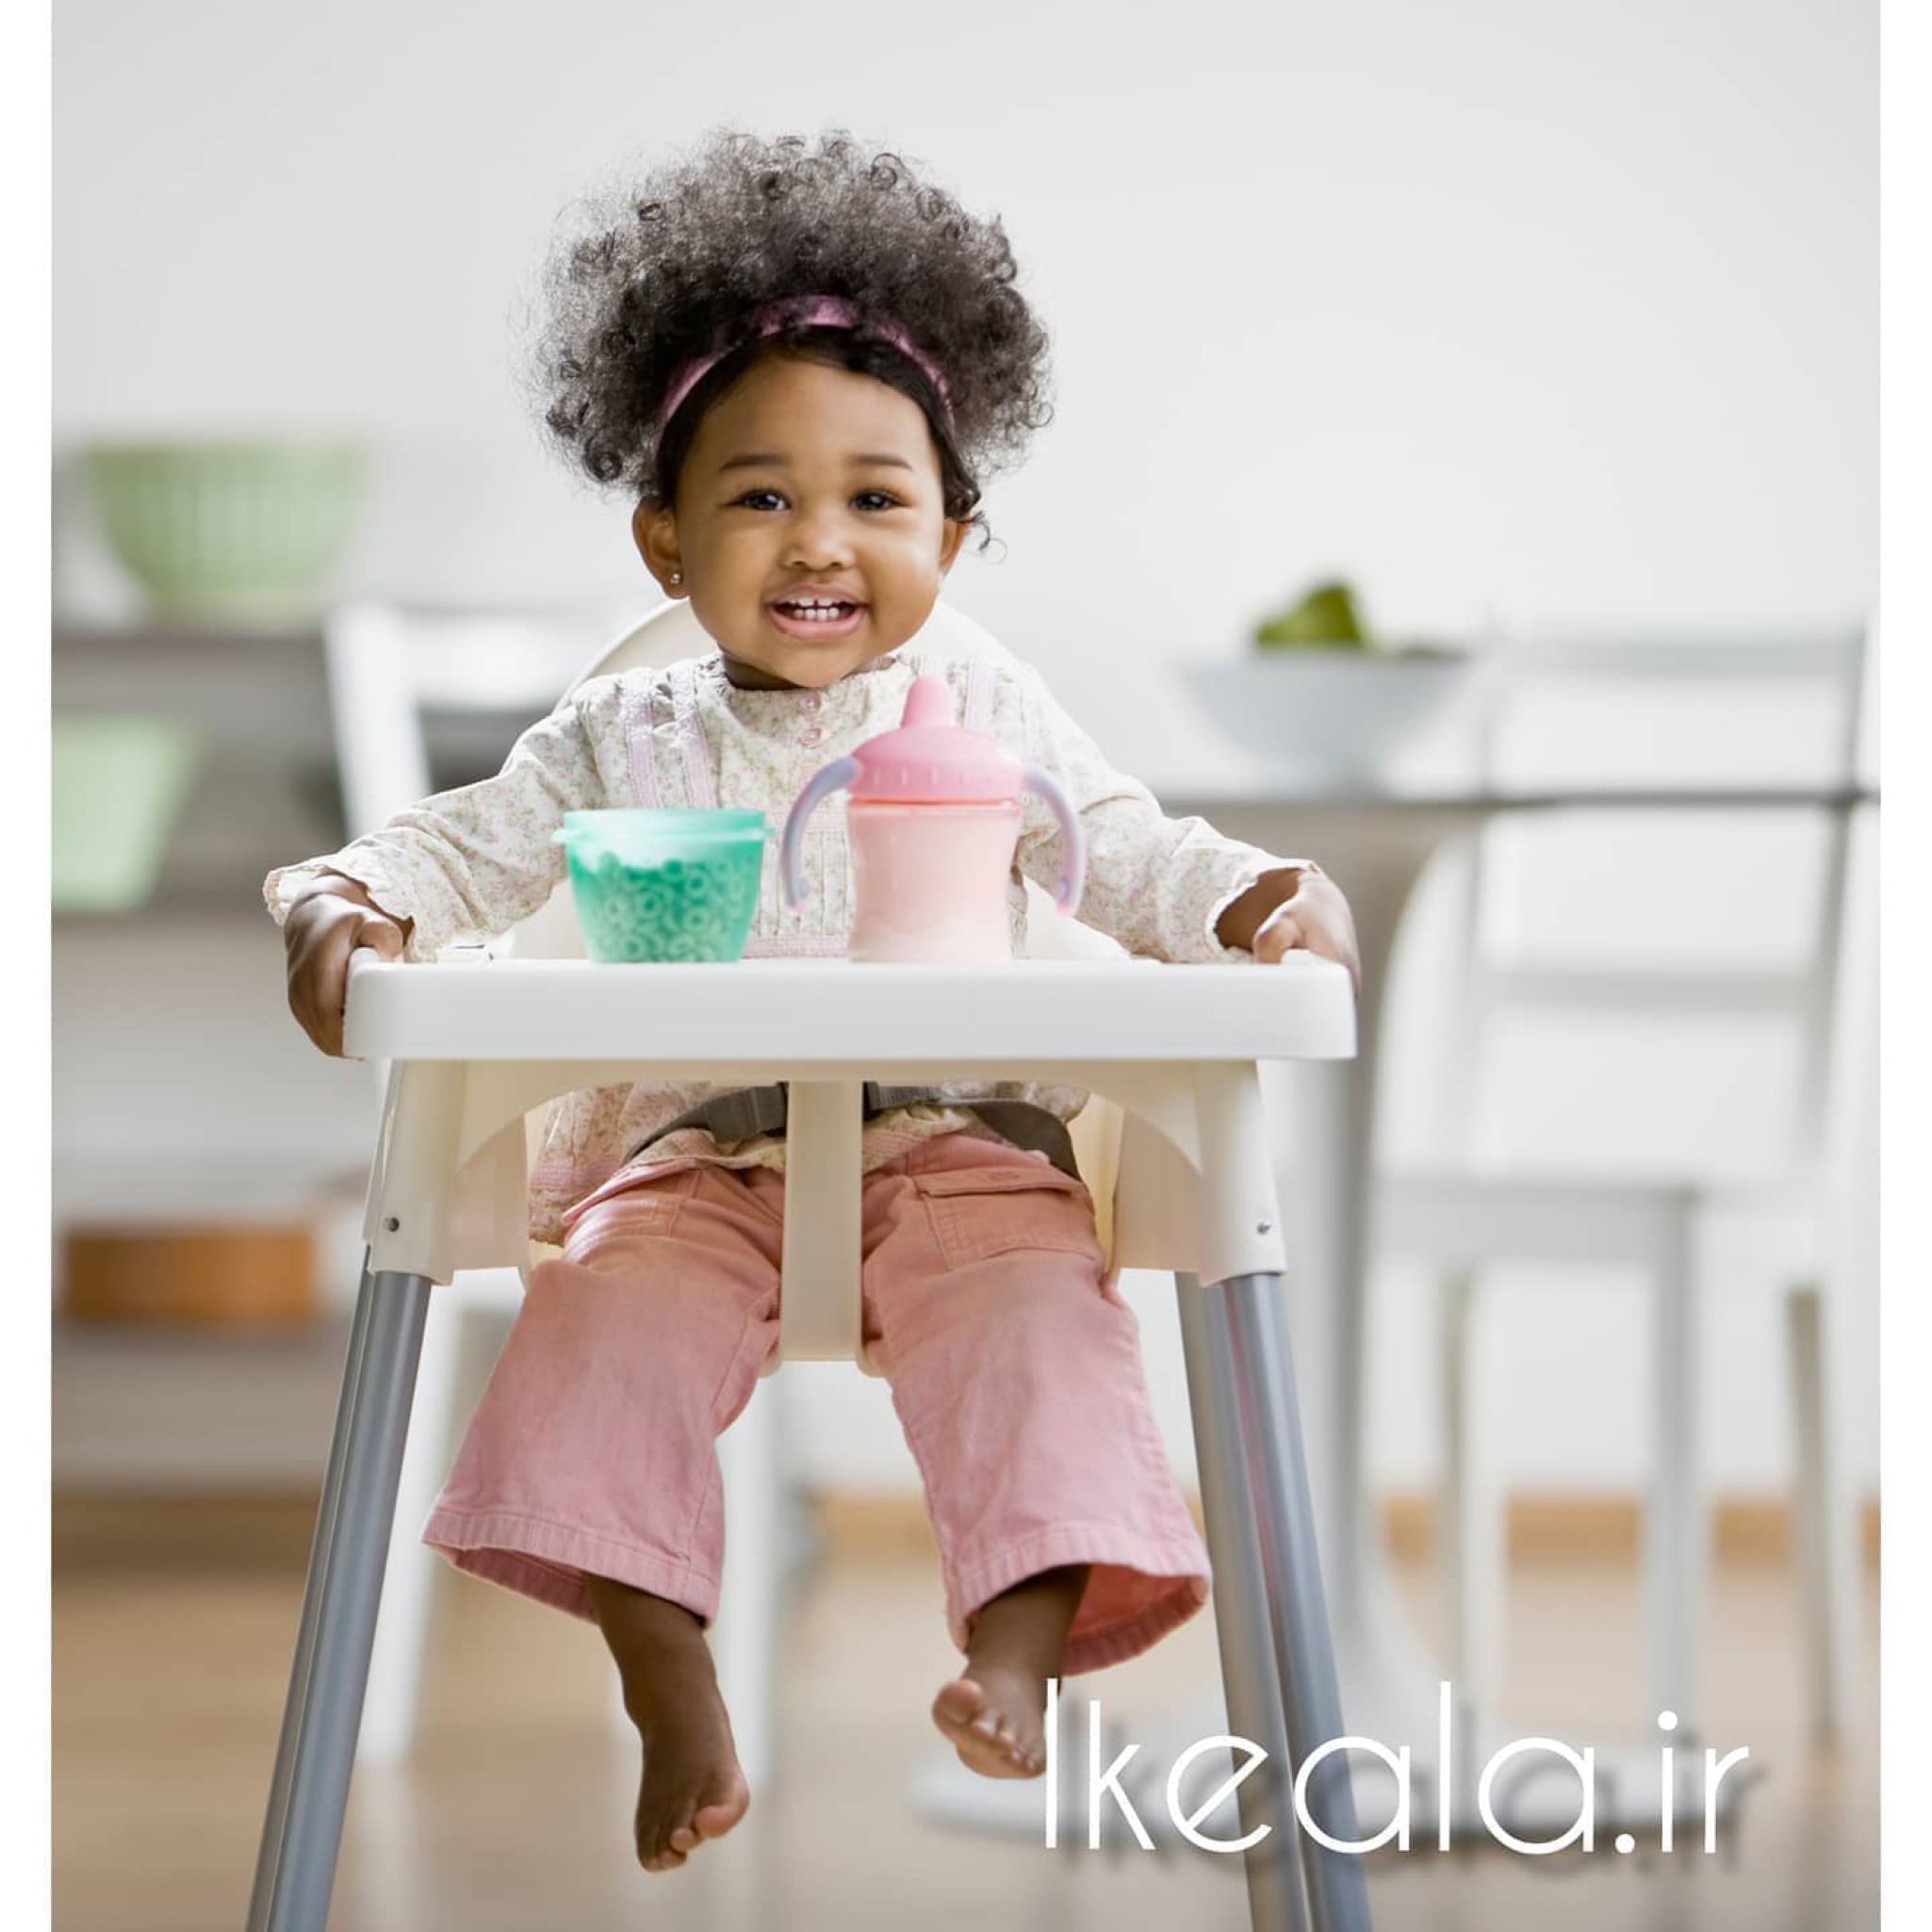  صندلی غذای کودک ایکیاIKEA ANTILOP رنگ سفید،دارای کمربندایمنی ،به راحتی اجزا قابل جداسازی می باشد و قابل حمل ونقل و شستشو 